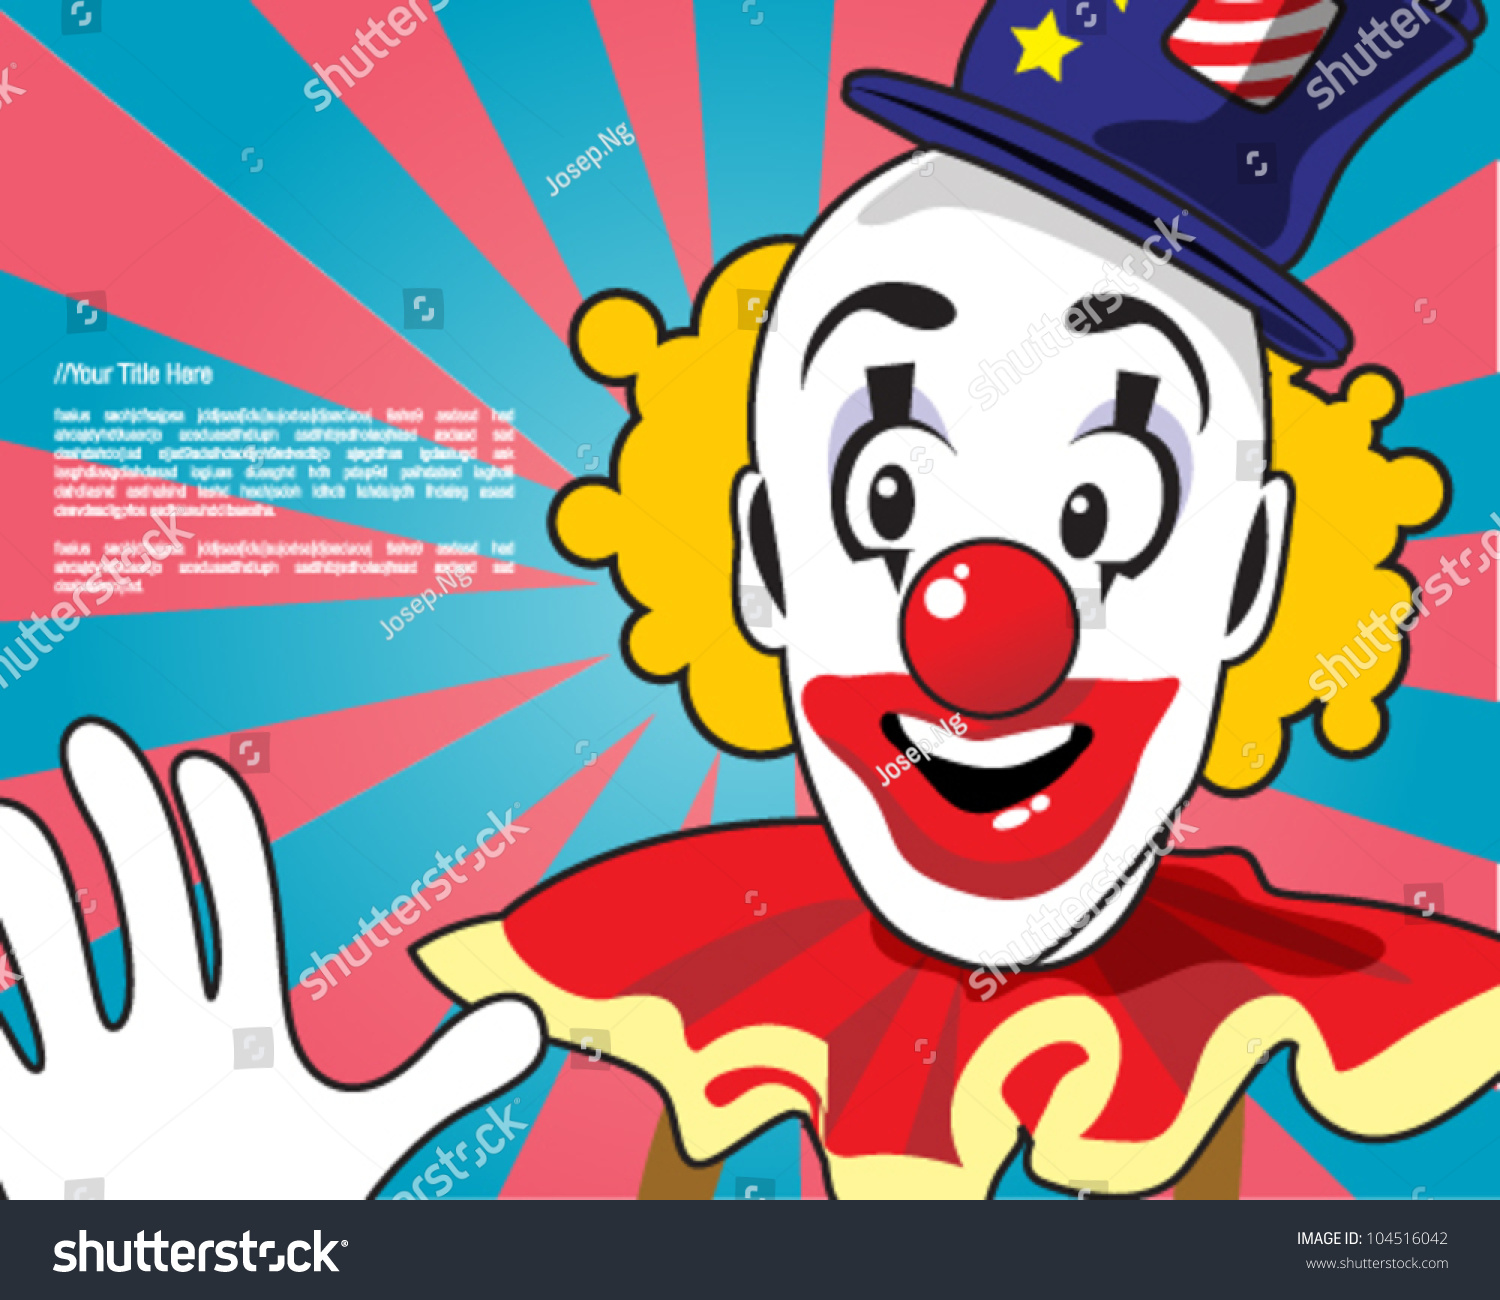 retro-clown-design-template-stock-vector-illustration-104516042